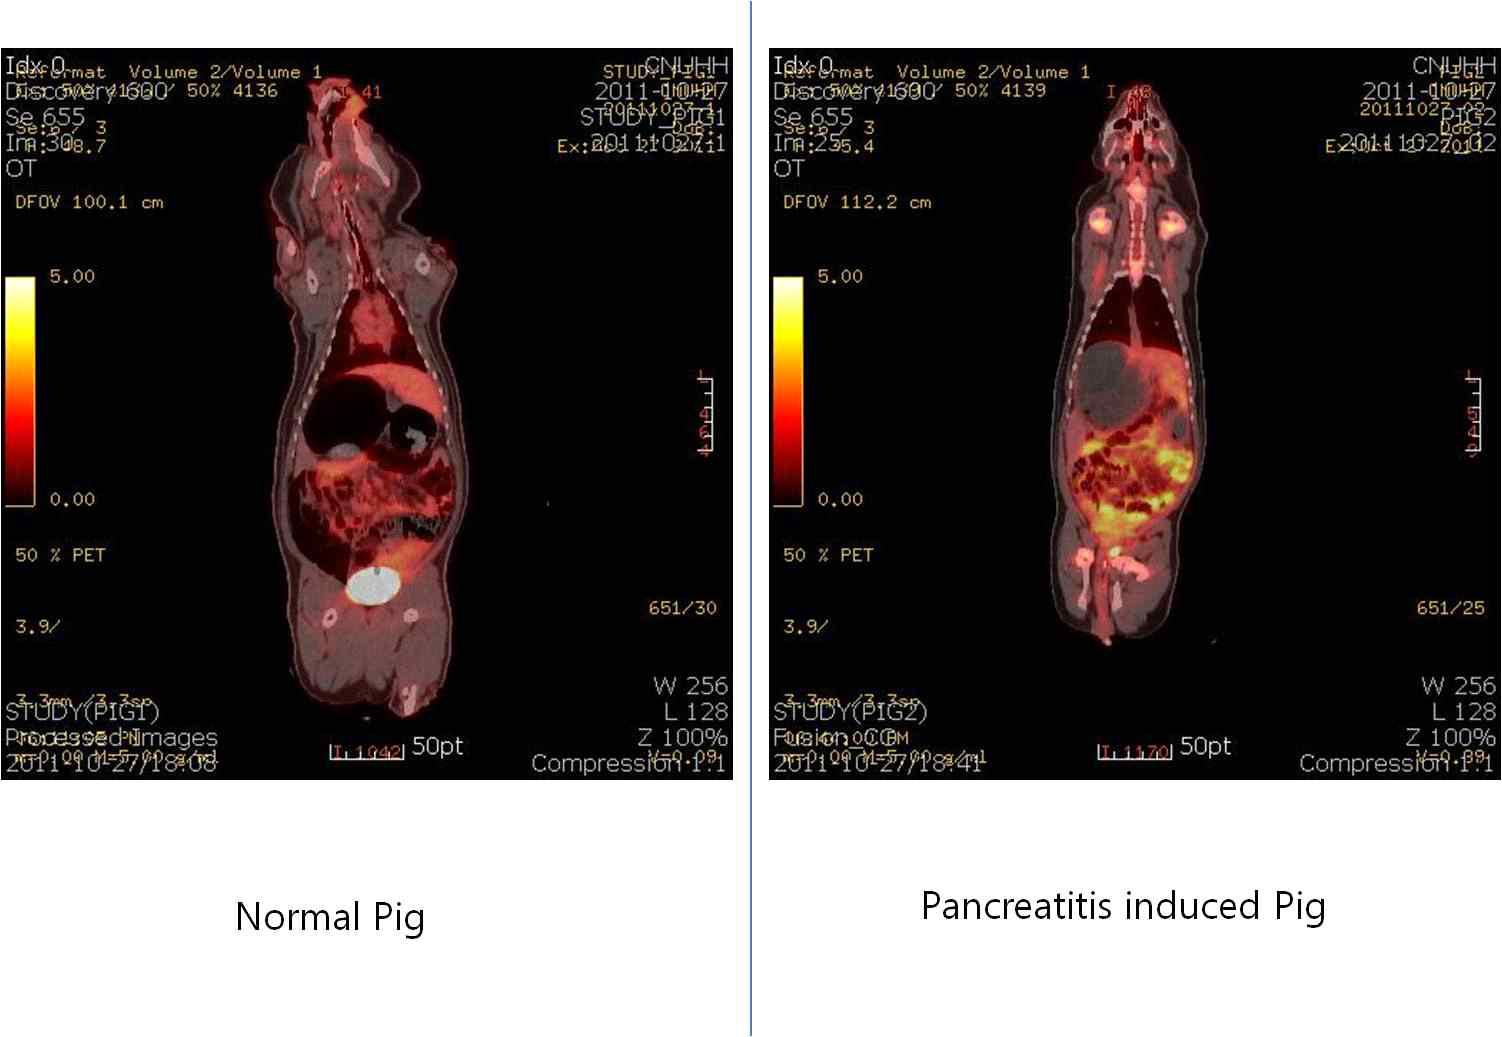 정상 미니돼지와 췌장염 유발 미니돼지에서 PET-CT의 영상에서 oblique 면에 의한 췌장 영상